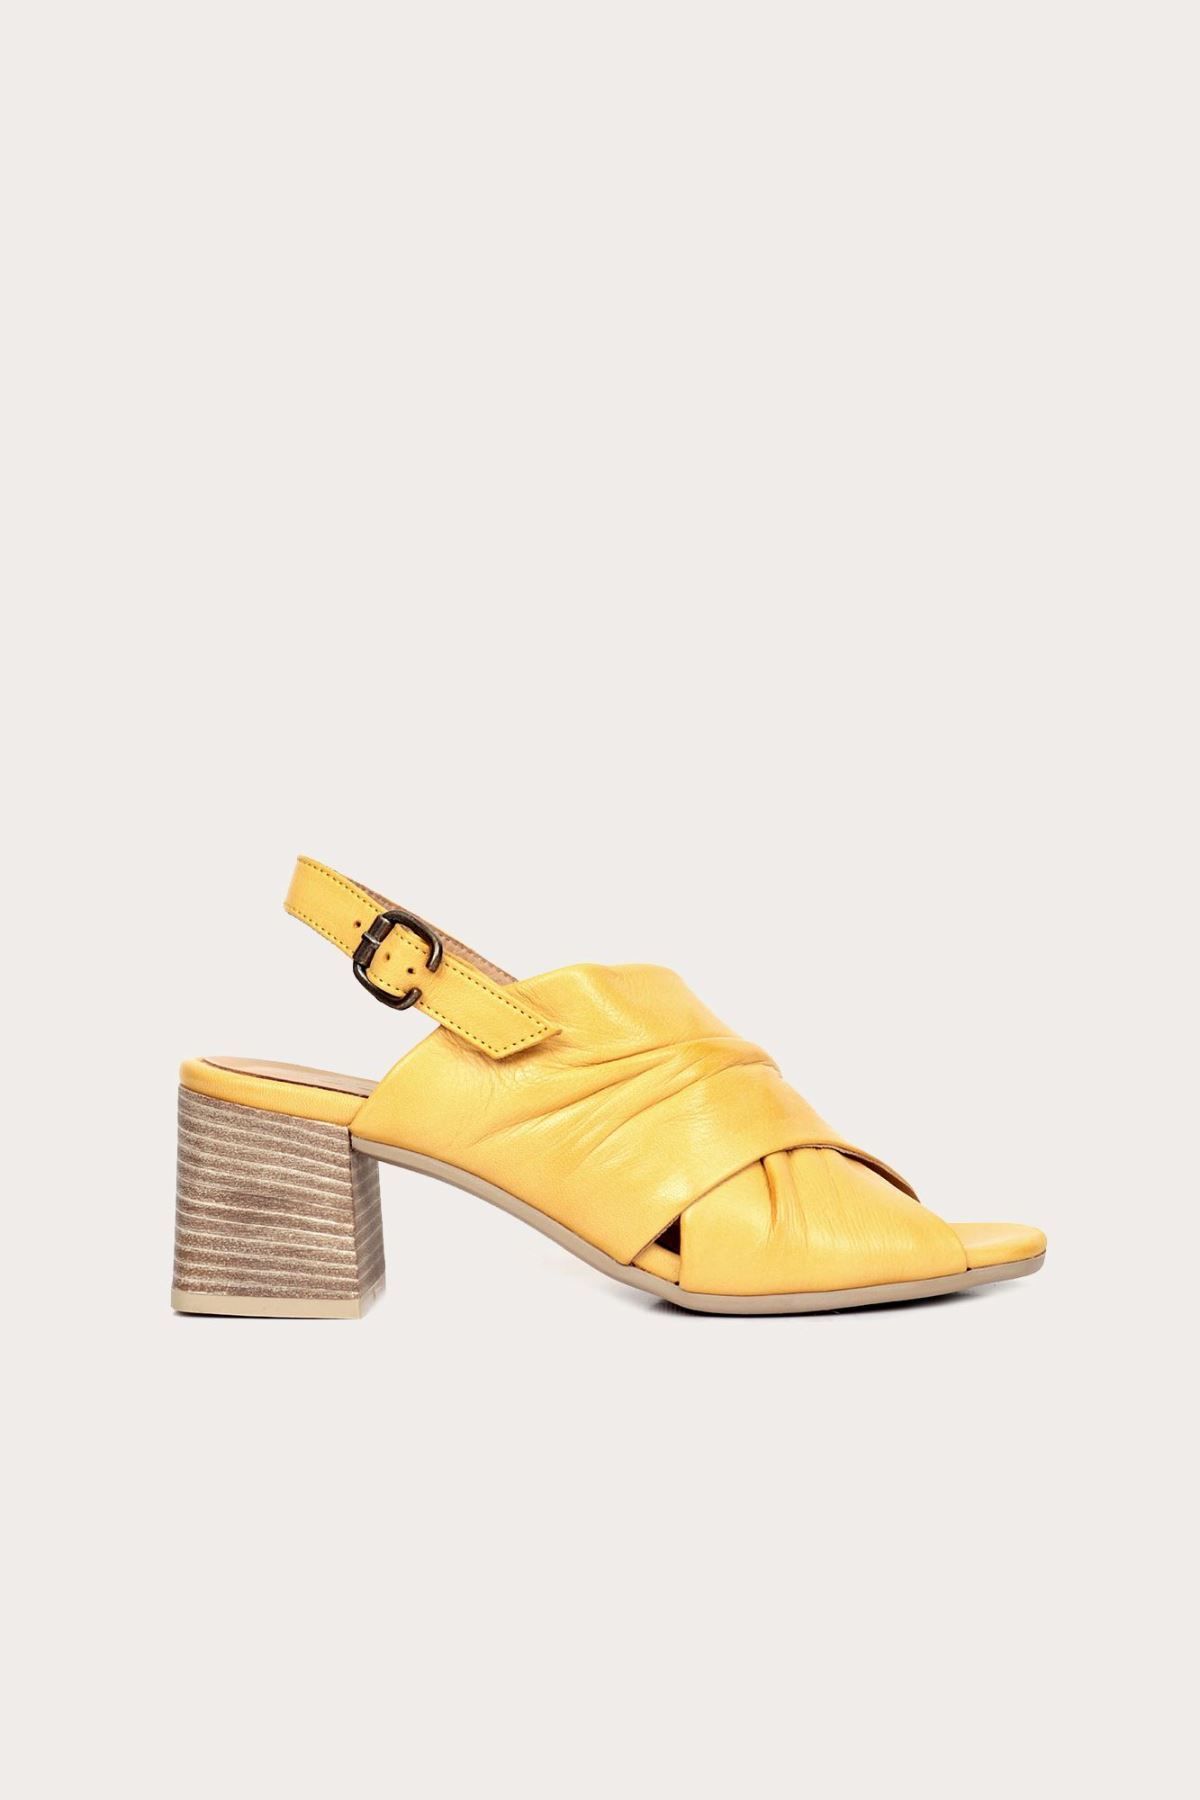 BUENO Shoes Sarı Deri Kadın Topuklu Ayakkabı